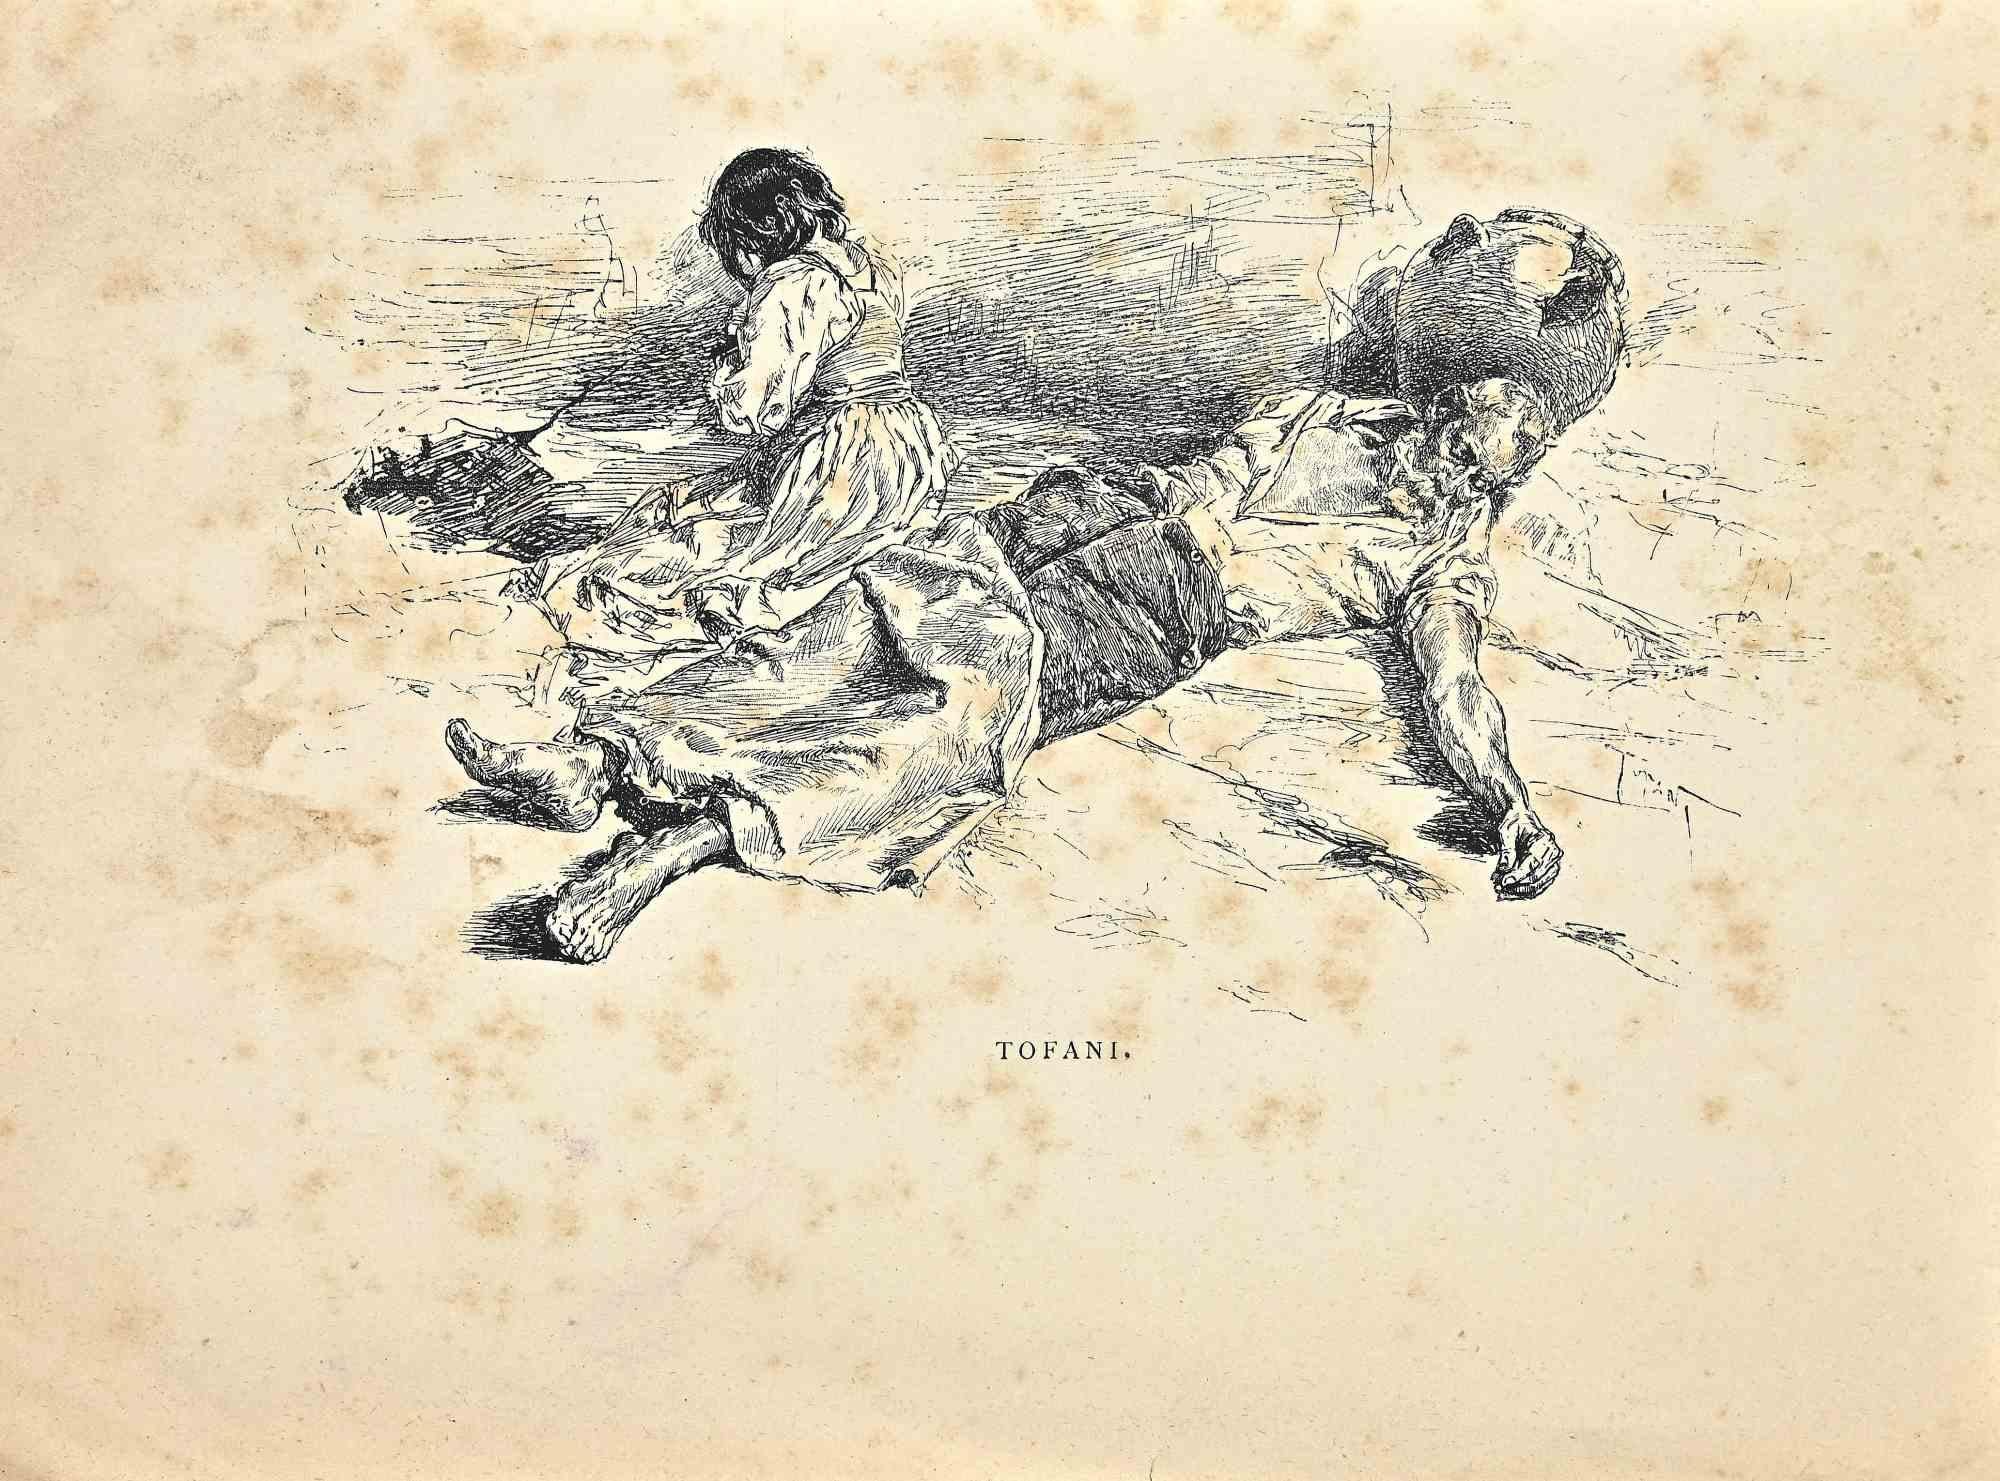 Le repos profond est une lithographie originale sur papier, réalisée à la fin du 19e siècle par Osvaldo Tofani.

Signé dans la planche dans la marge inférieure.

En bonnes conditions, avec des rousseurs diffuses.

L'œuvre d'art représentée par des